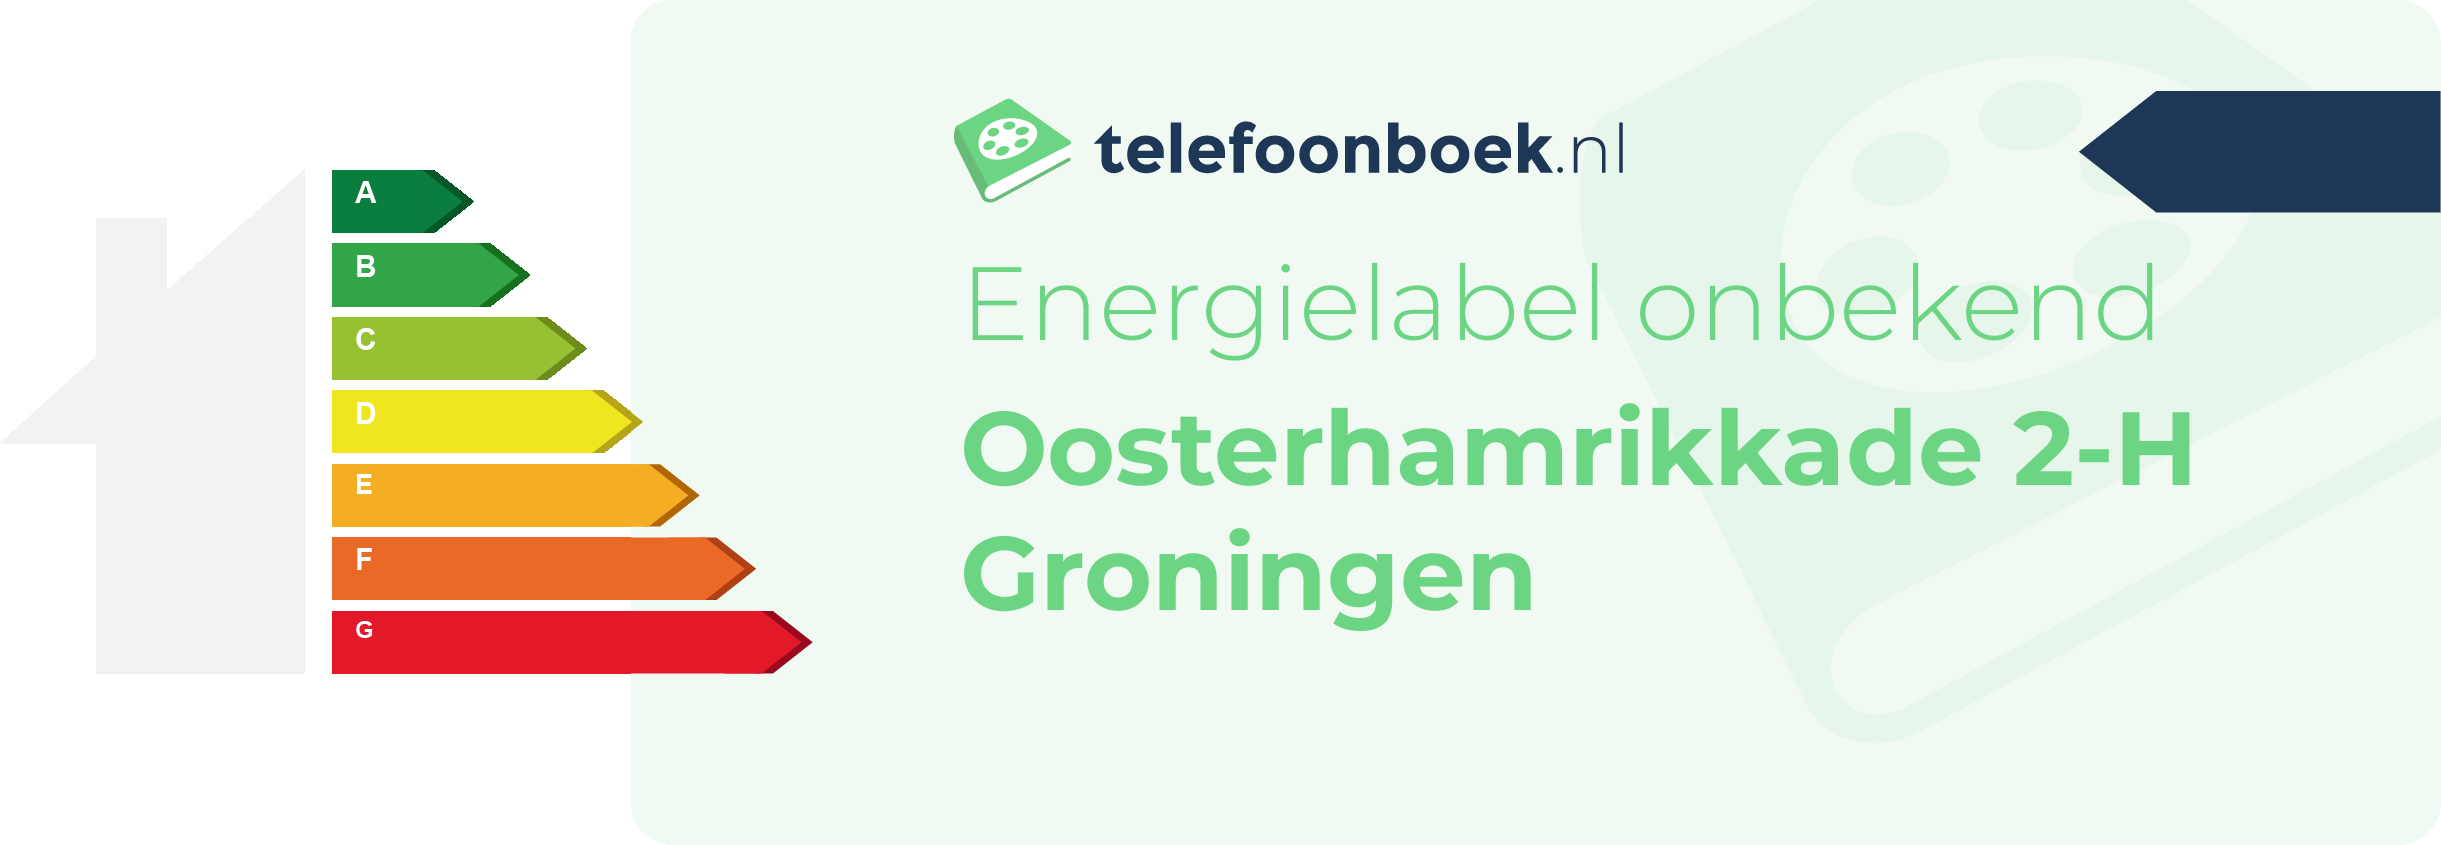 Energielabel Oosterhamrikkade 2-H Groningen